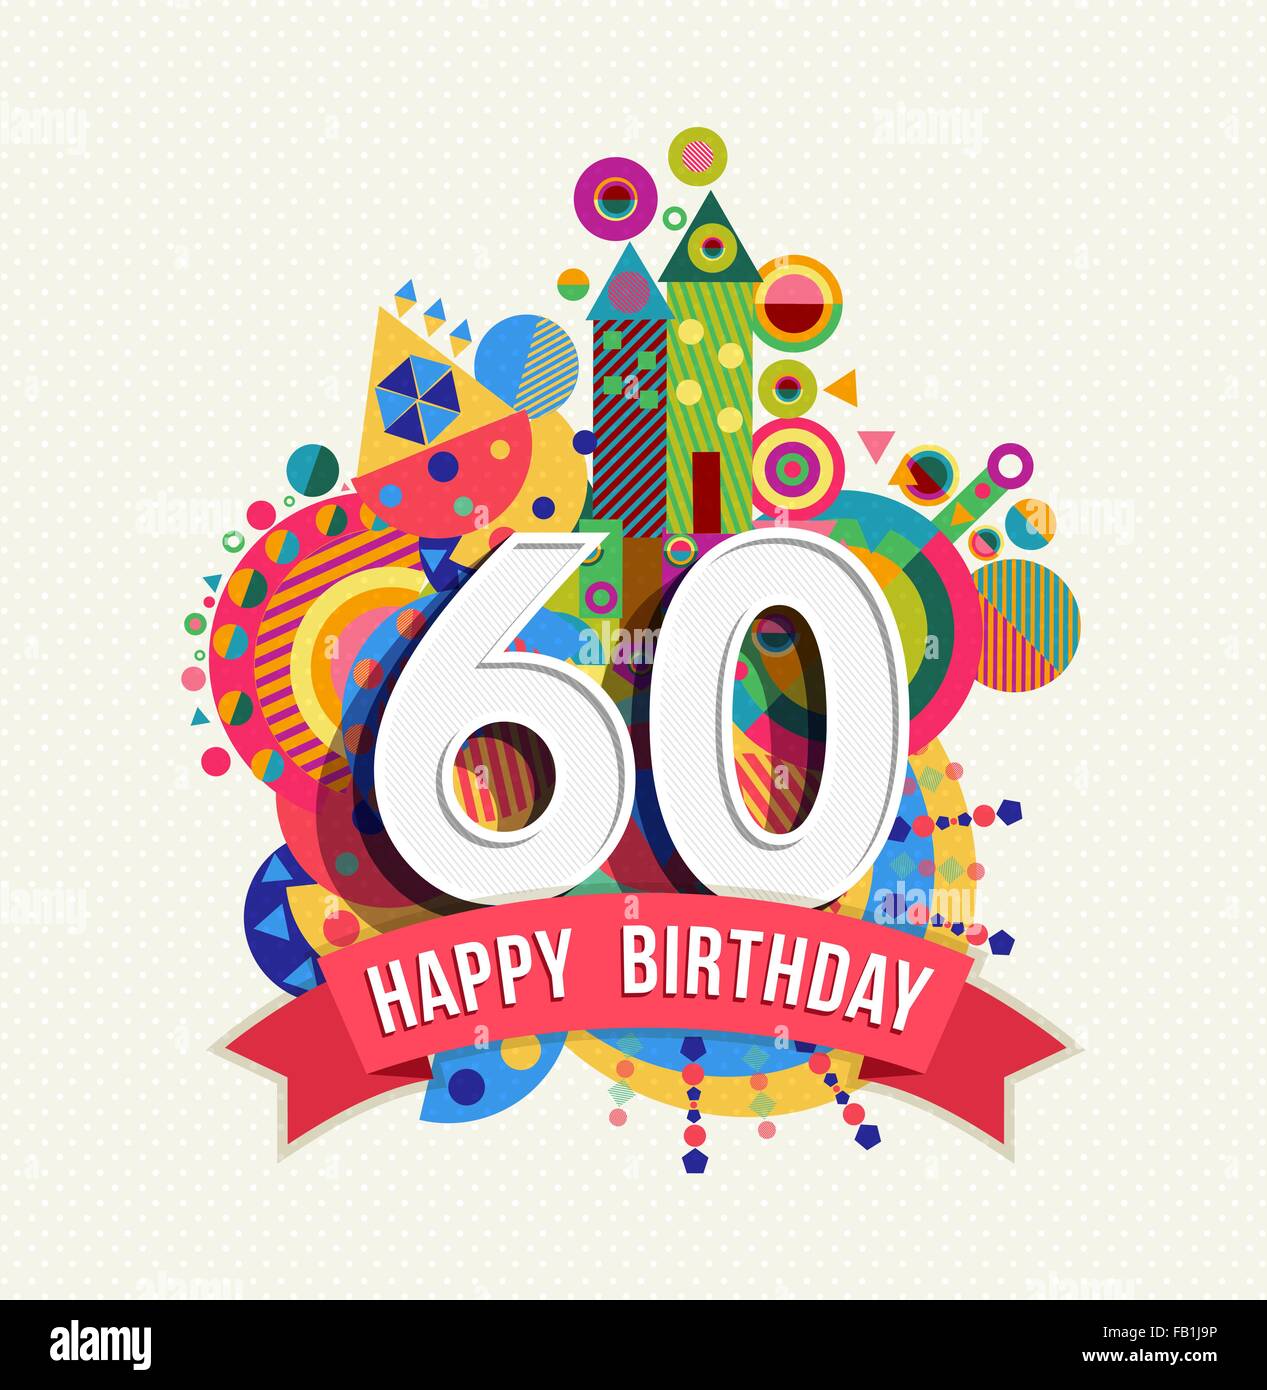 Buon Compleanno 60 Anno Divertimento Celebrazione Biglietto Di Auguri Con Il Numero Di Etichetta Di Testo Colorato E Design Di Geometria Eps10 Vettore Immagine E Vettoriale Alamy